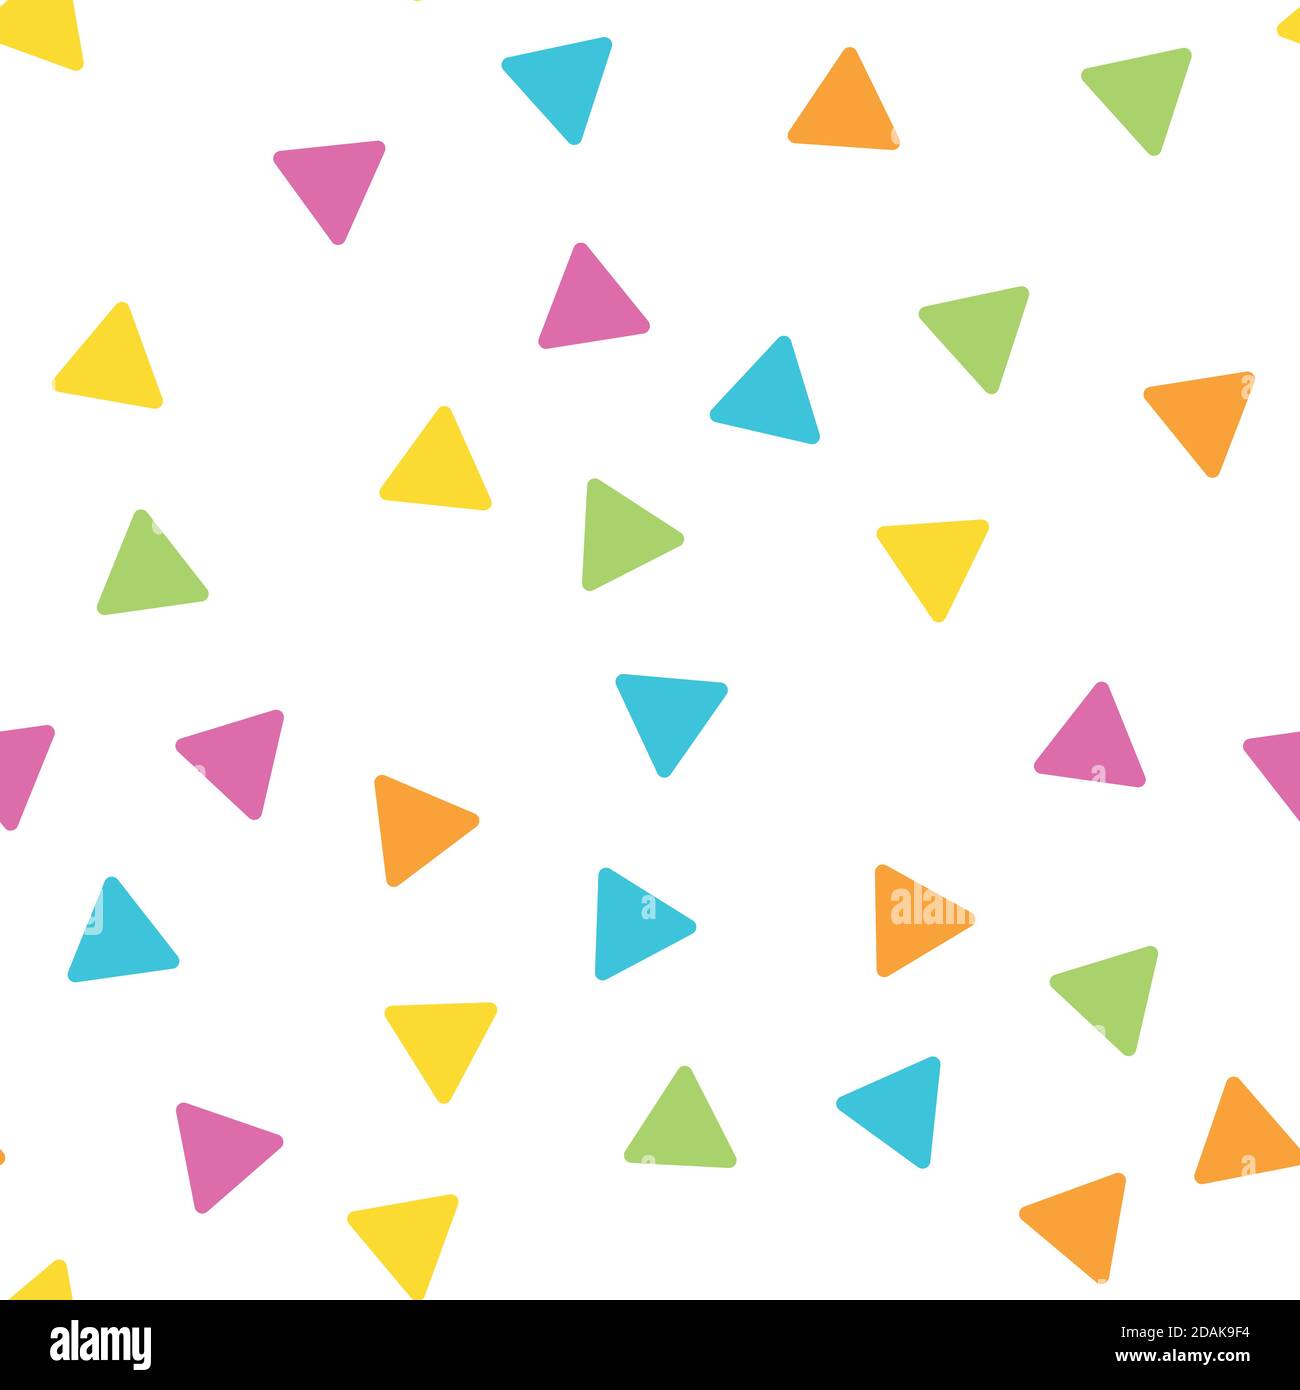 Motif géométrique abstrait sans couture des triangles dans un ordre aléatoire. Drôle, heureux et thème pour les enfants. Illustration simple à vecteur plat. Illustration de Vecteur